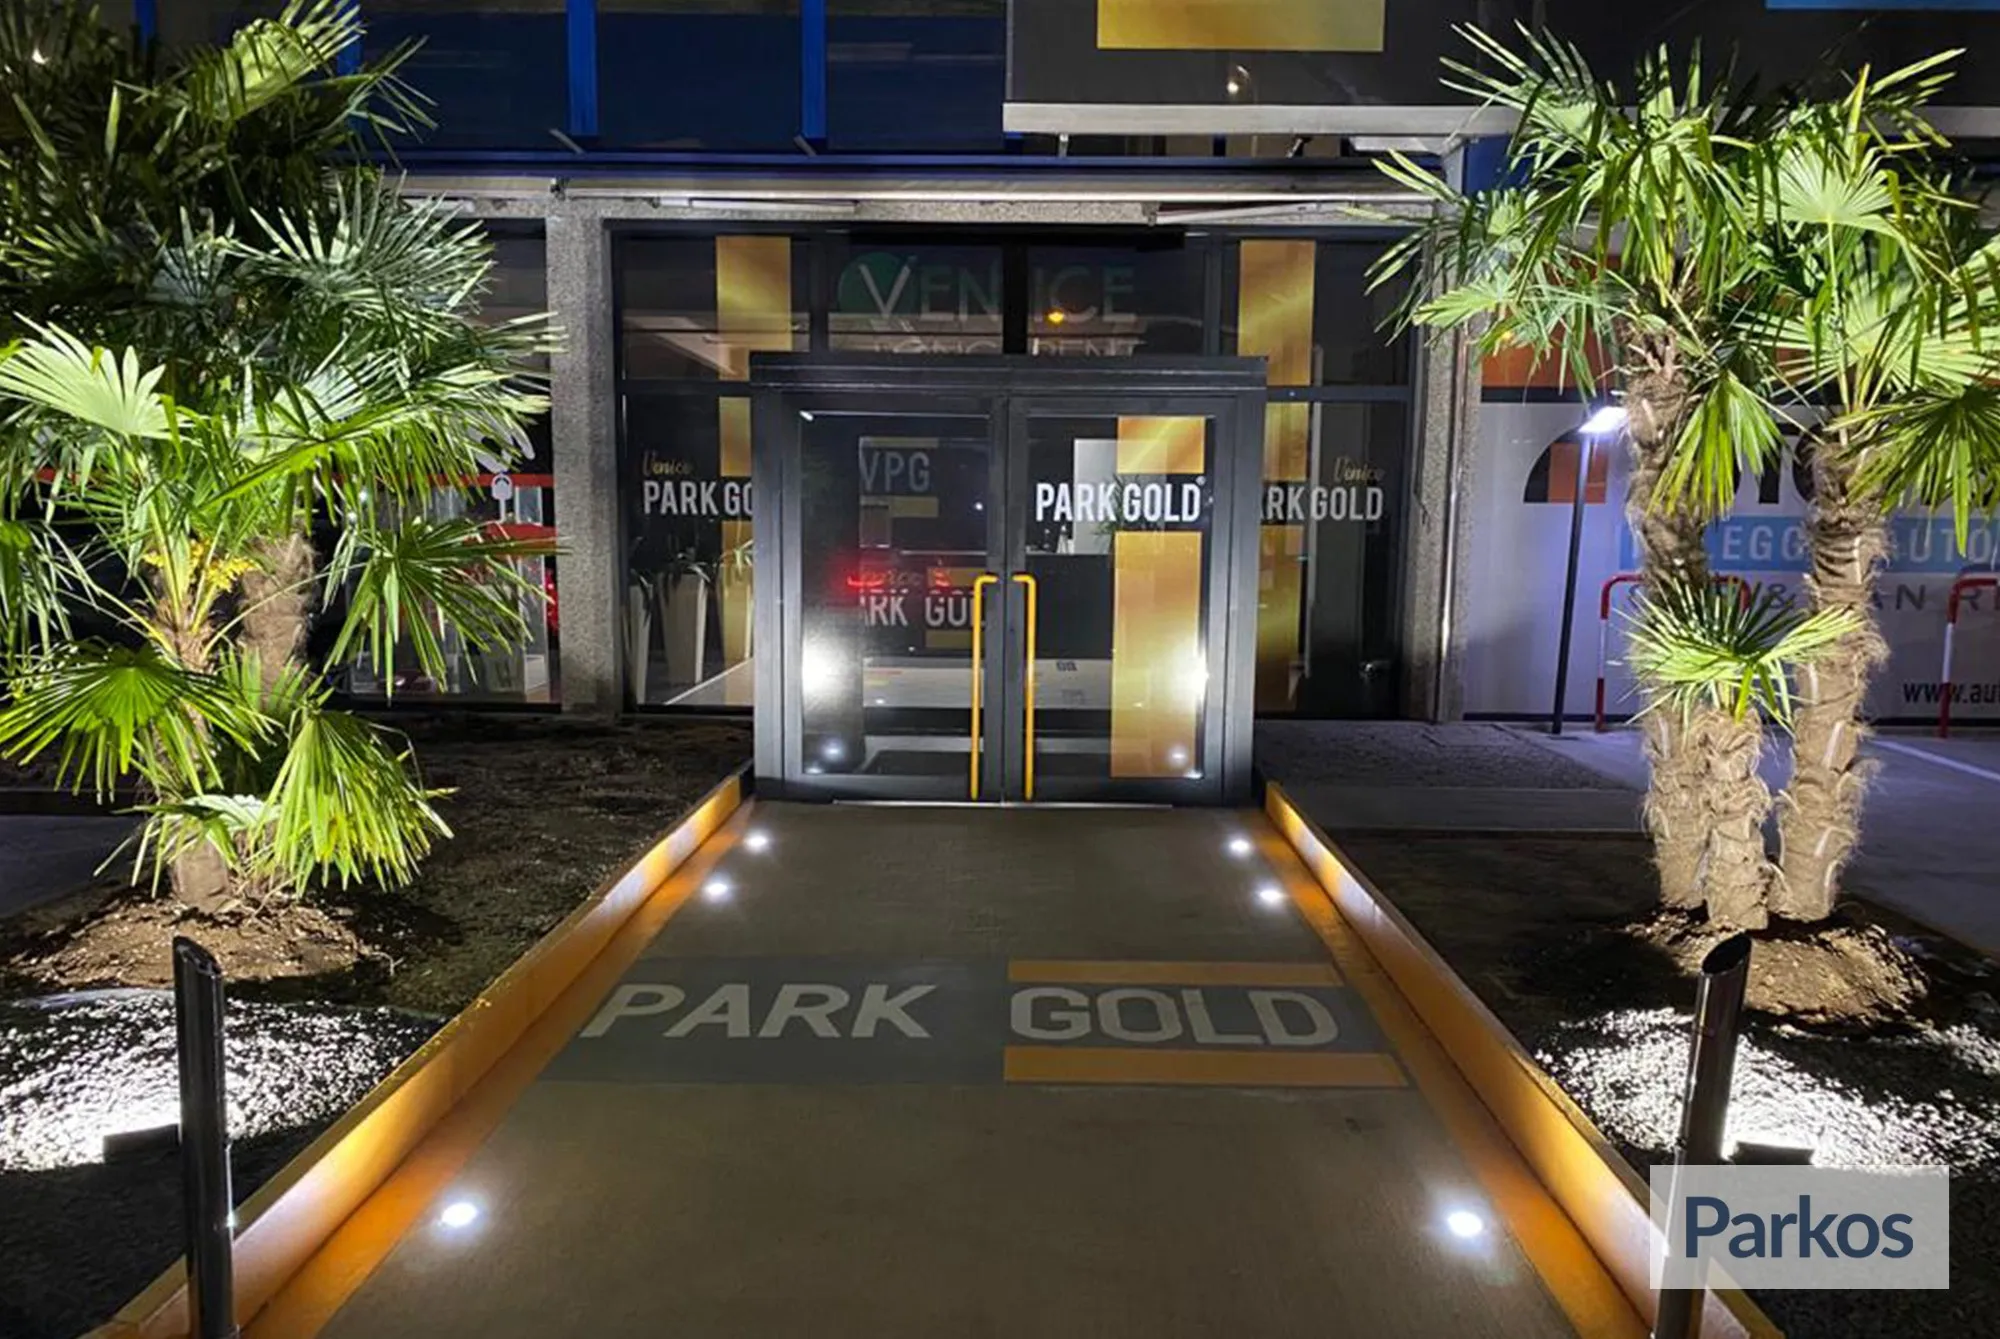 Park Gold Venezia (Paga in parcheggio) - Venice Airport Parking - picture 1